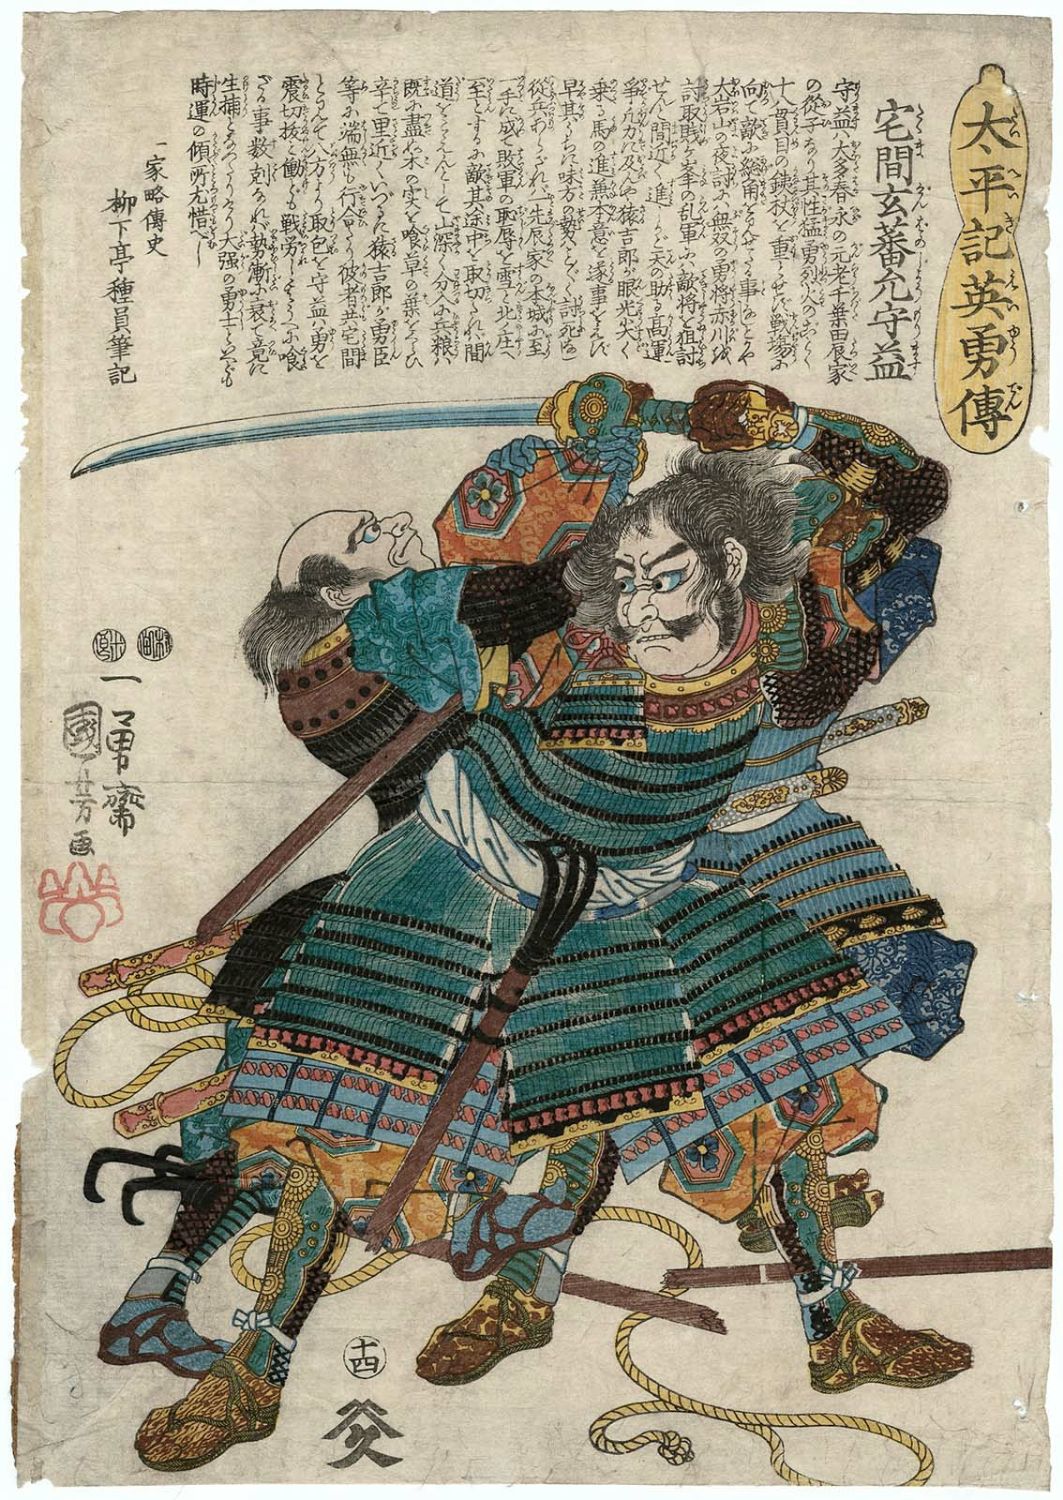 Utagawa Kuniyoshi: Takuma Genba-no-jo Morimasu 宅間玄蕃允守益 